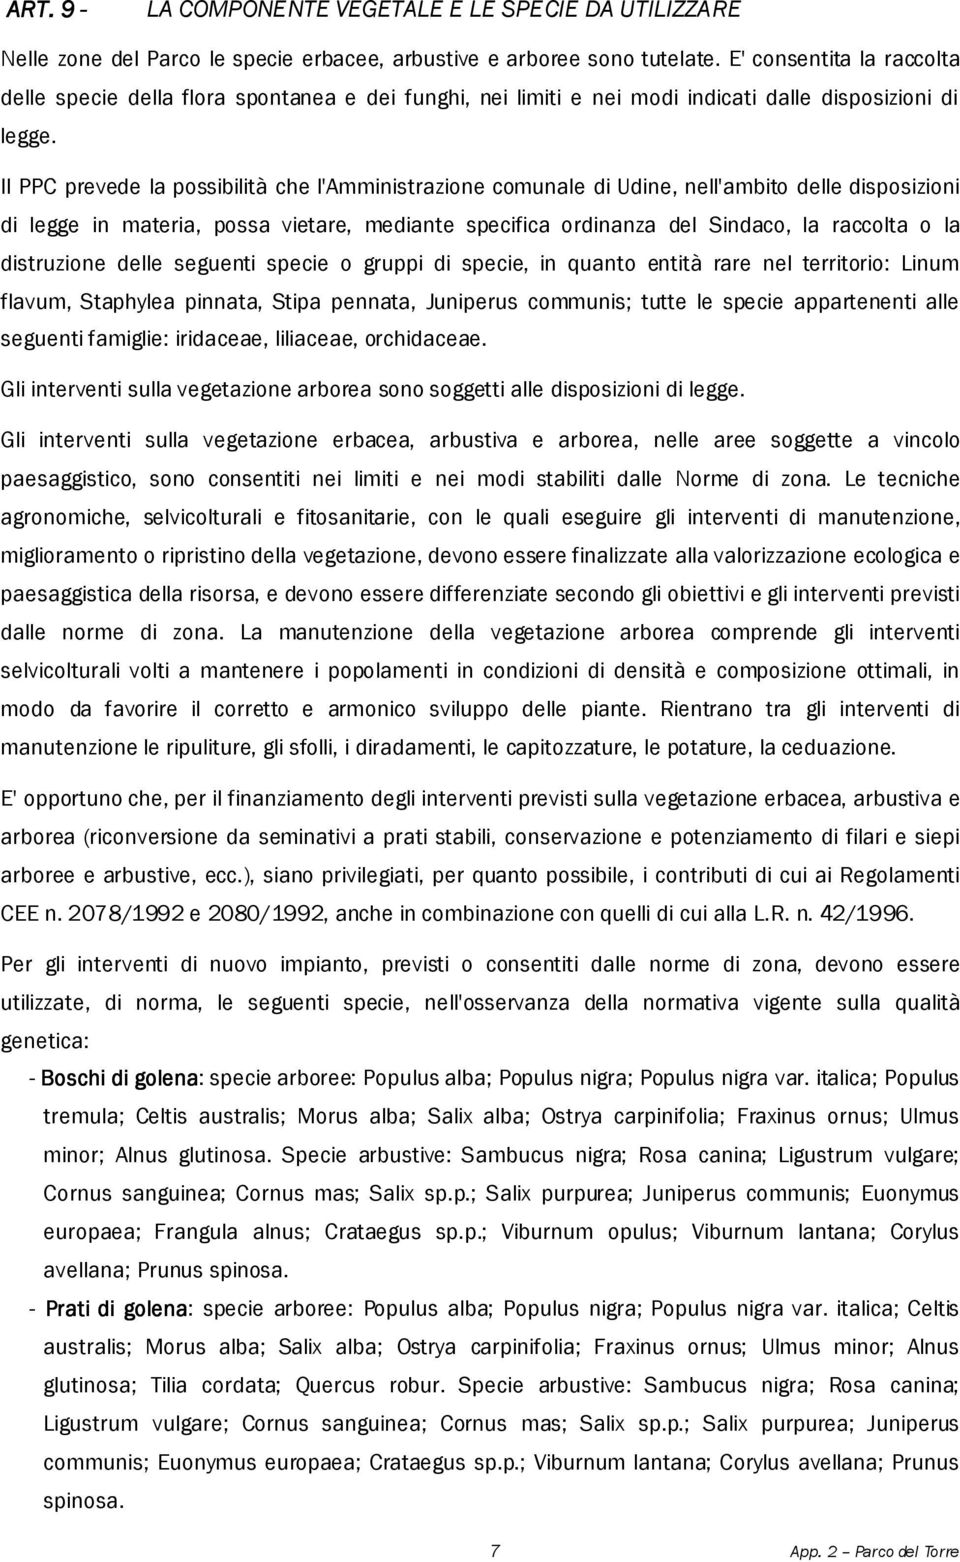 Il PPC prevede la possibilità che l'amministrazione comunale di Udine, nell'ambito delle disposizioni di legge in materia, possa vietare, mediante specifica ordinanza del Sindaco, la raccolta o la